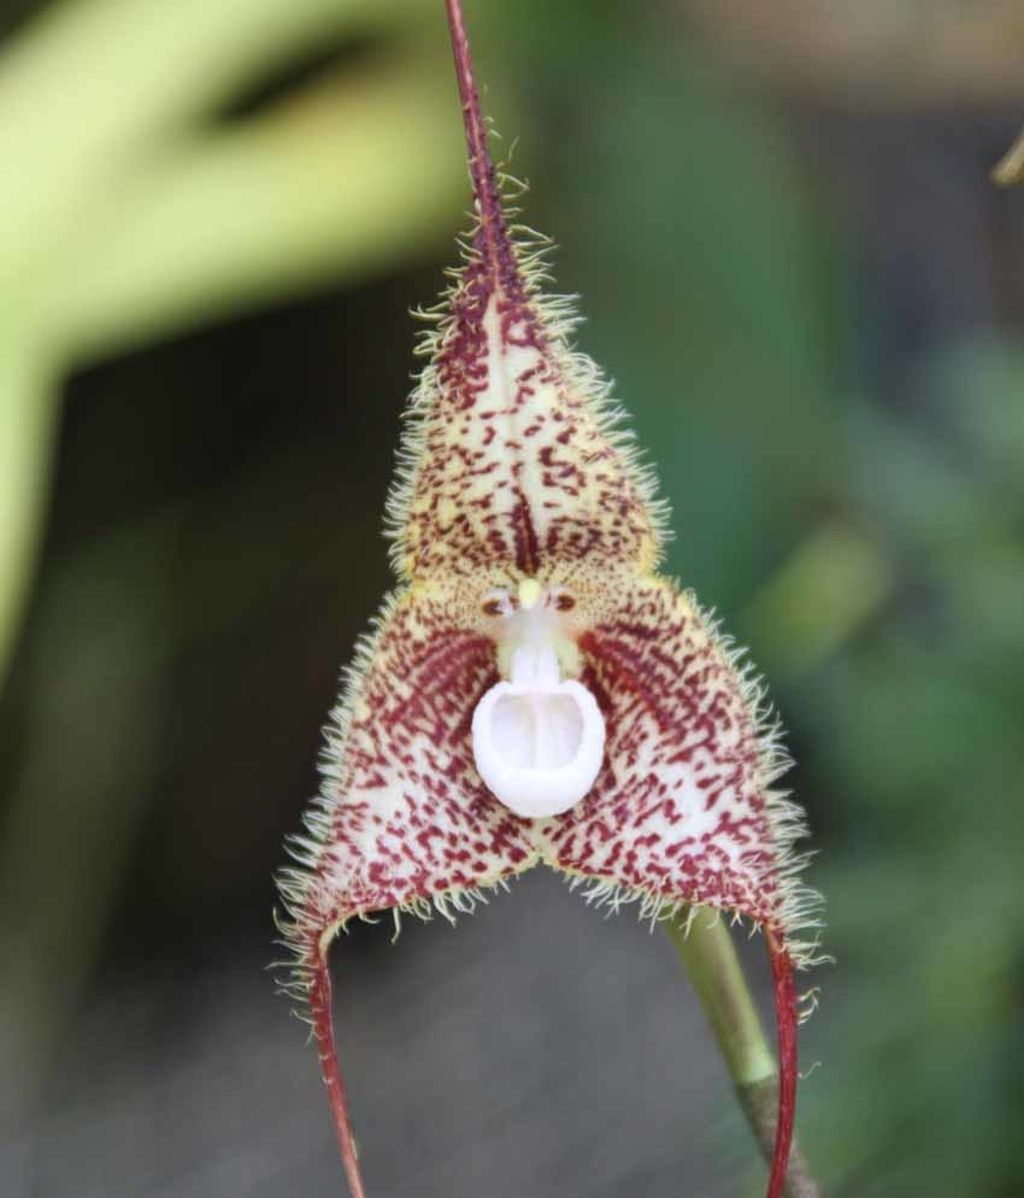 Increíble orquídea con la cara de un mono